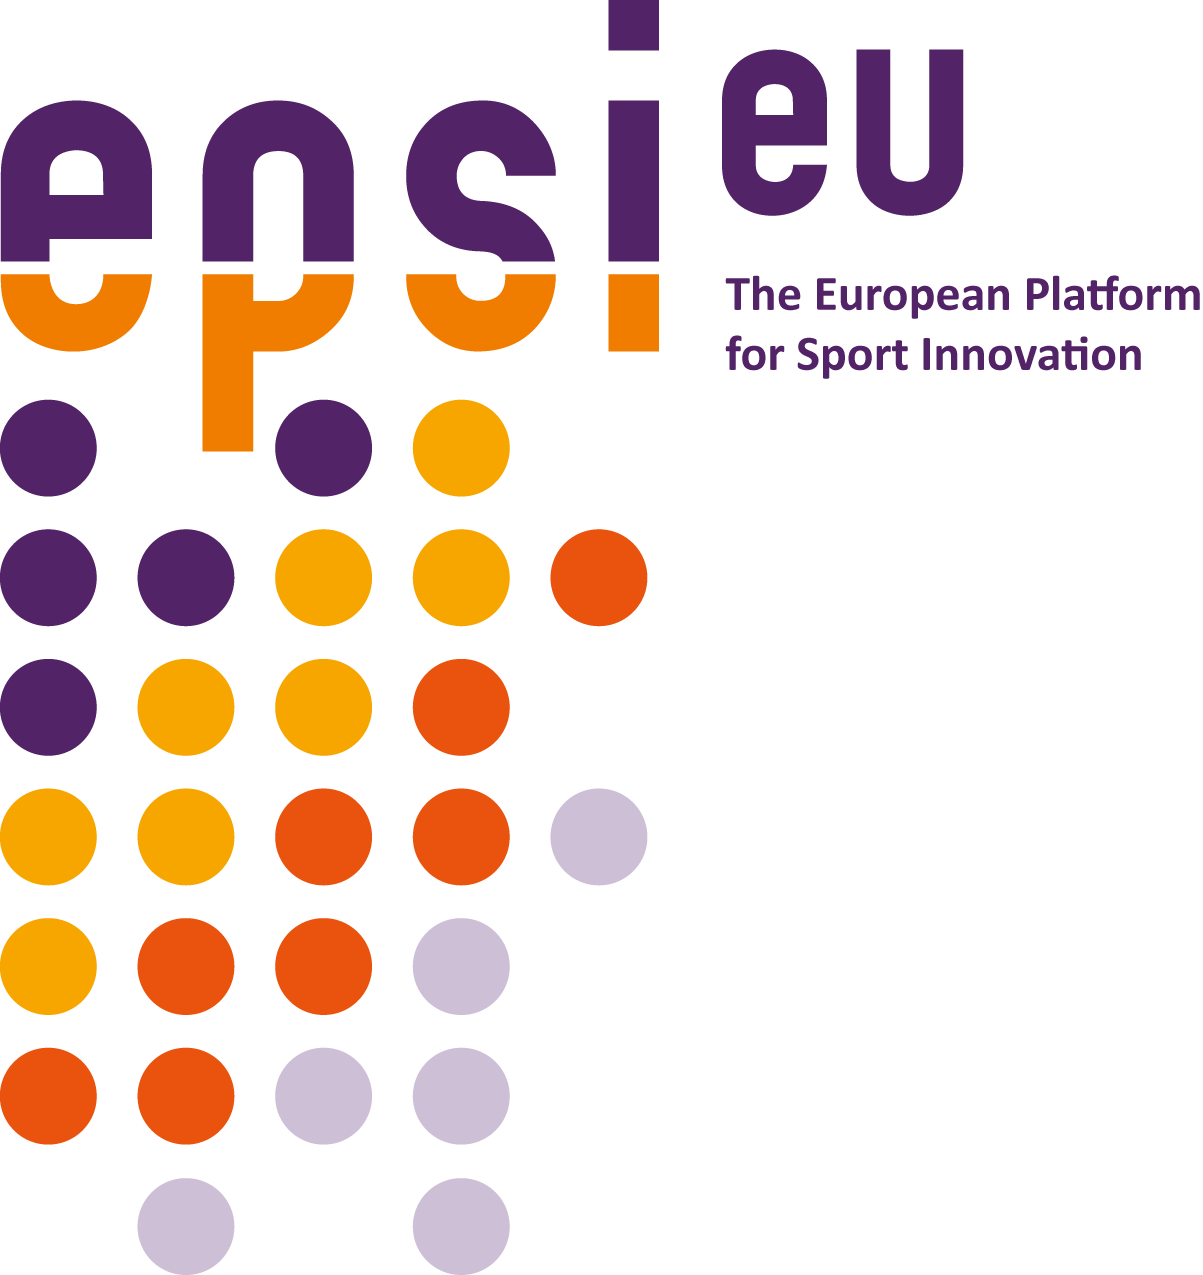 EPSI European Platform for Sport Innovation